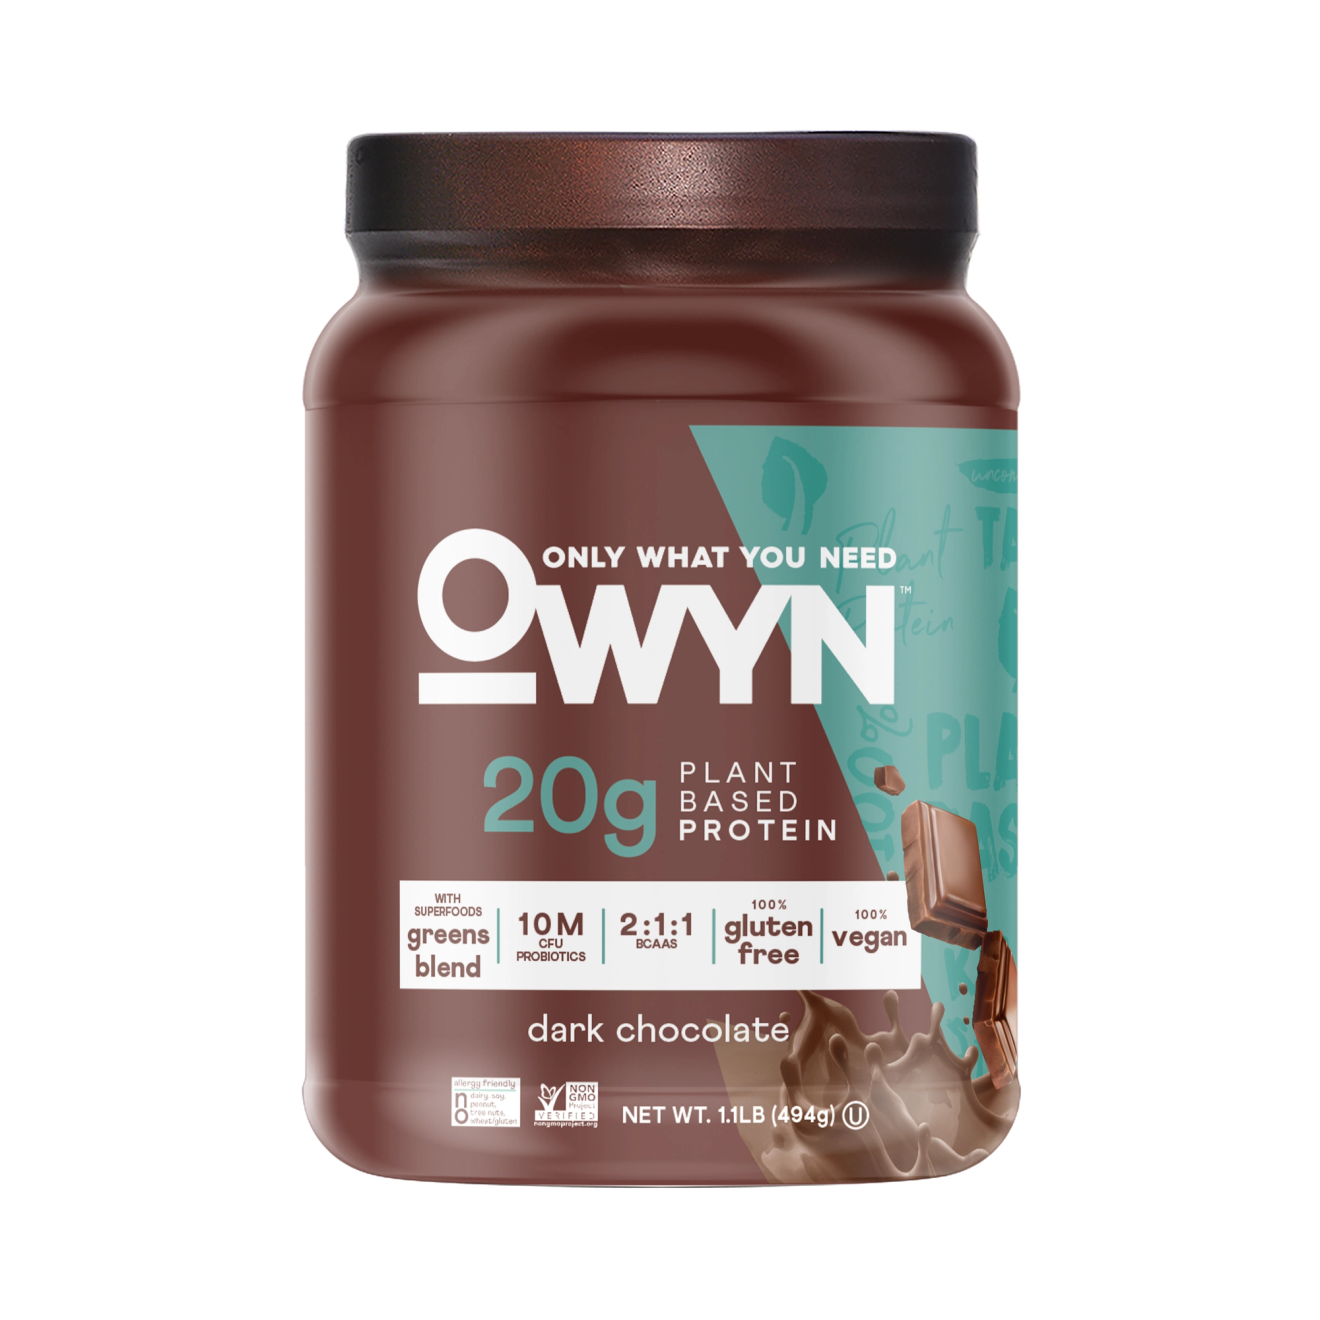 OWYN Protein Powder